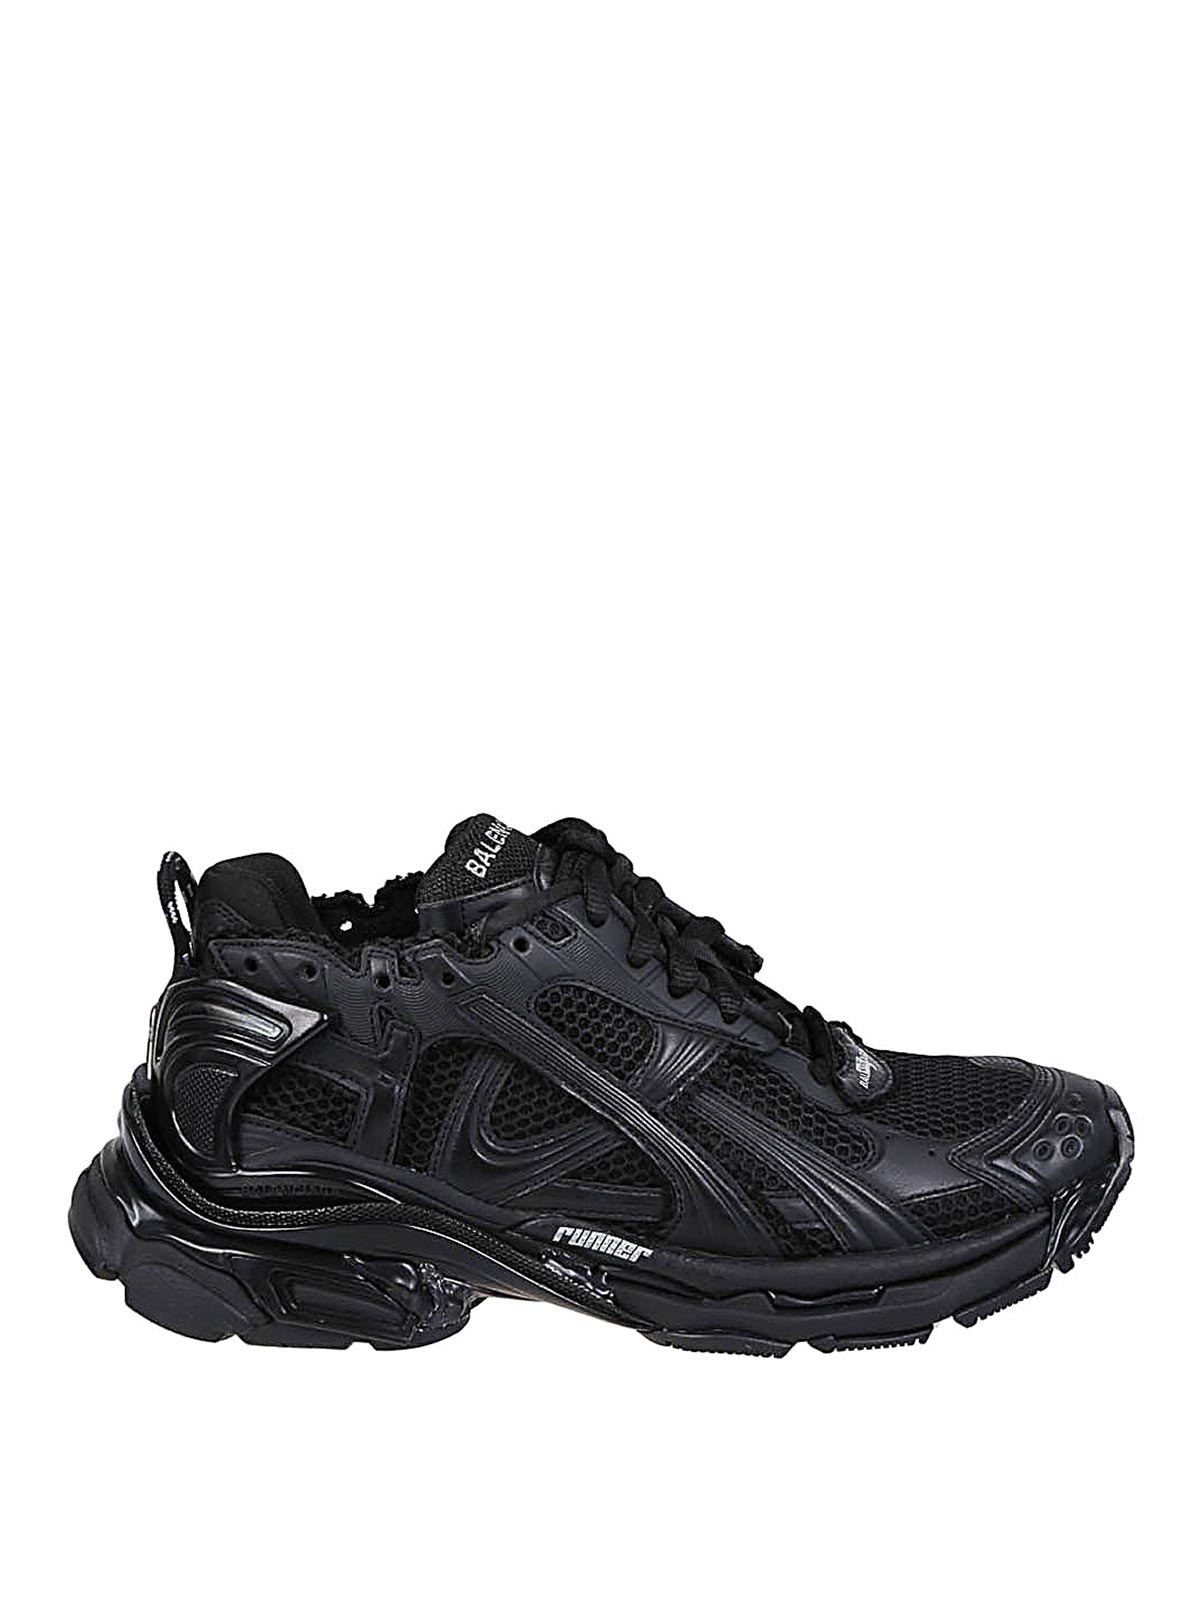 Shop Balenciaga Runner Sneakers In Black